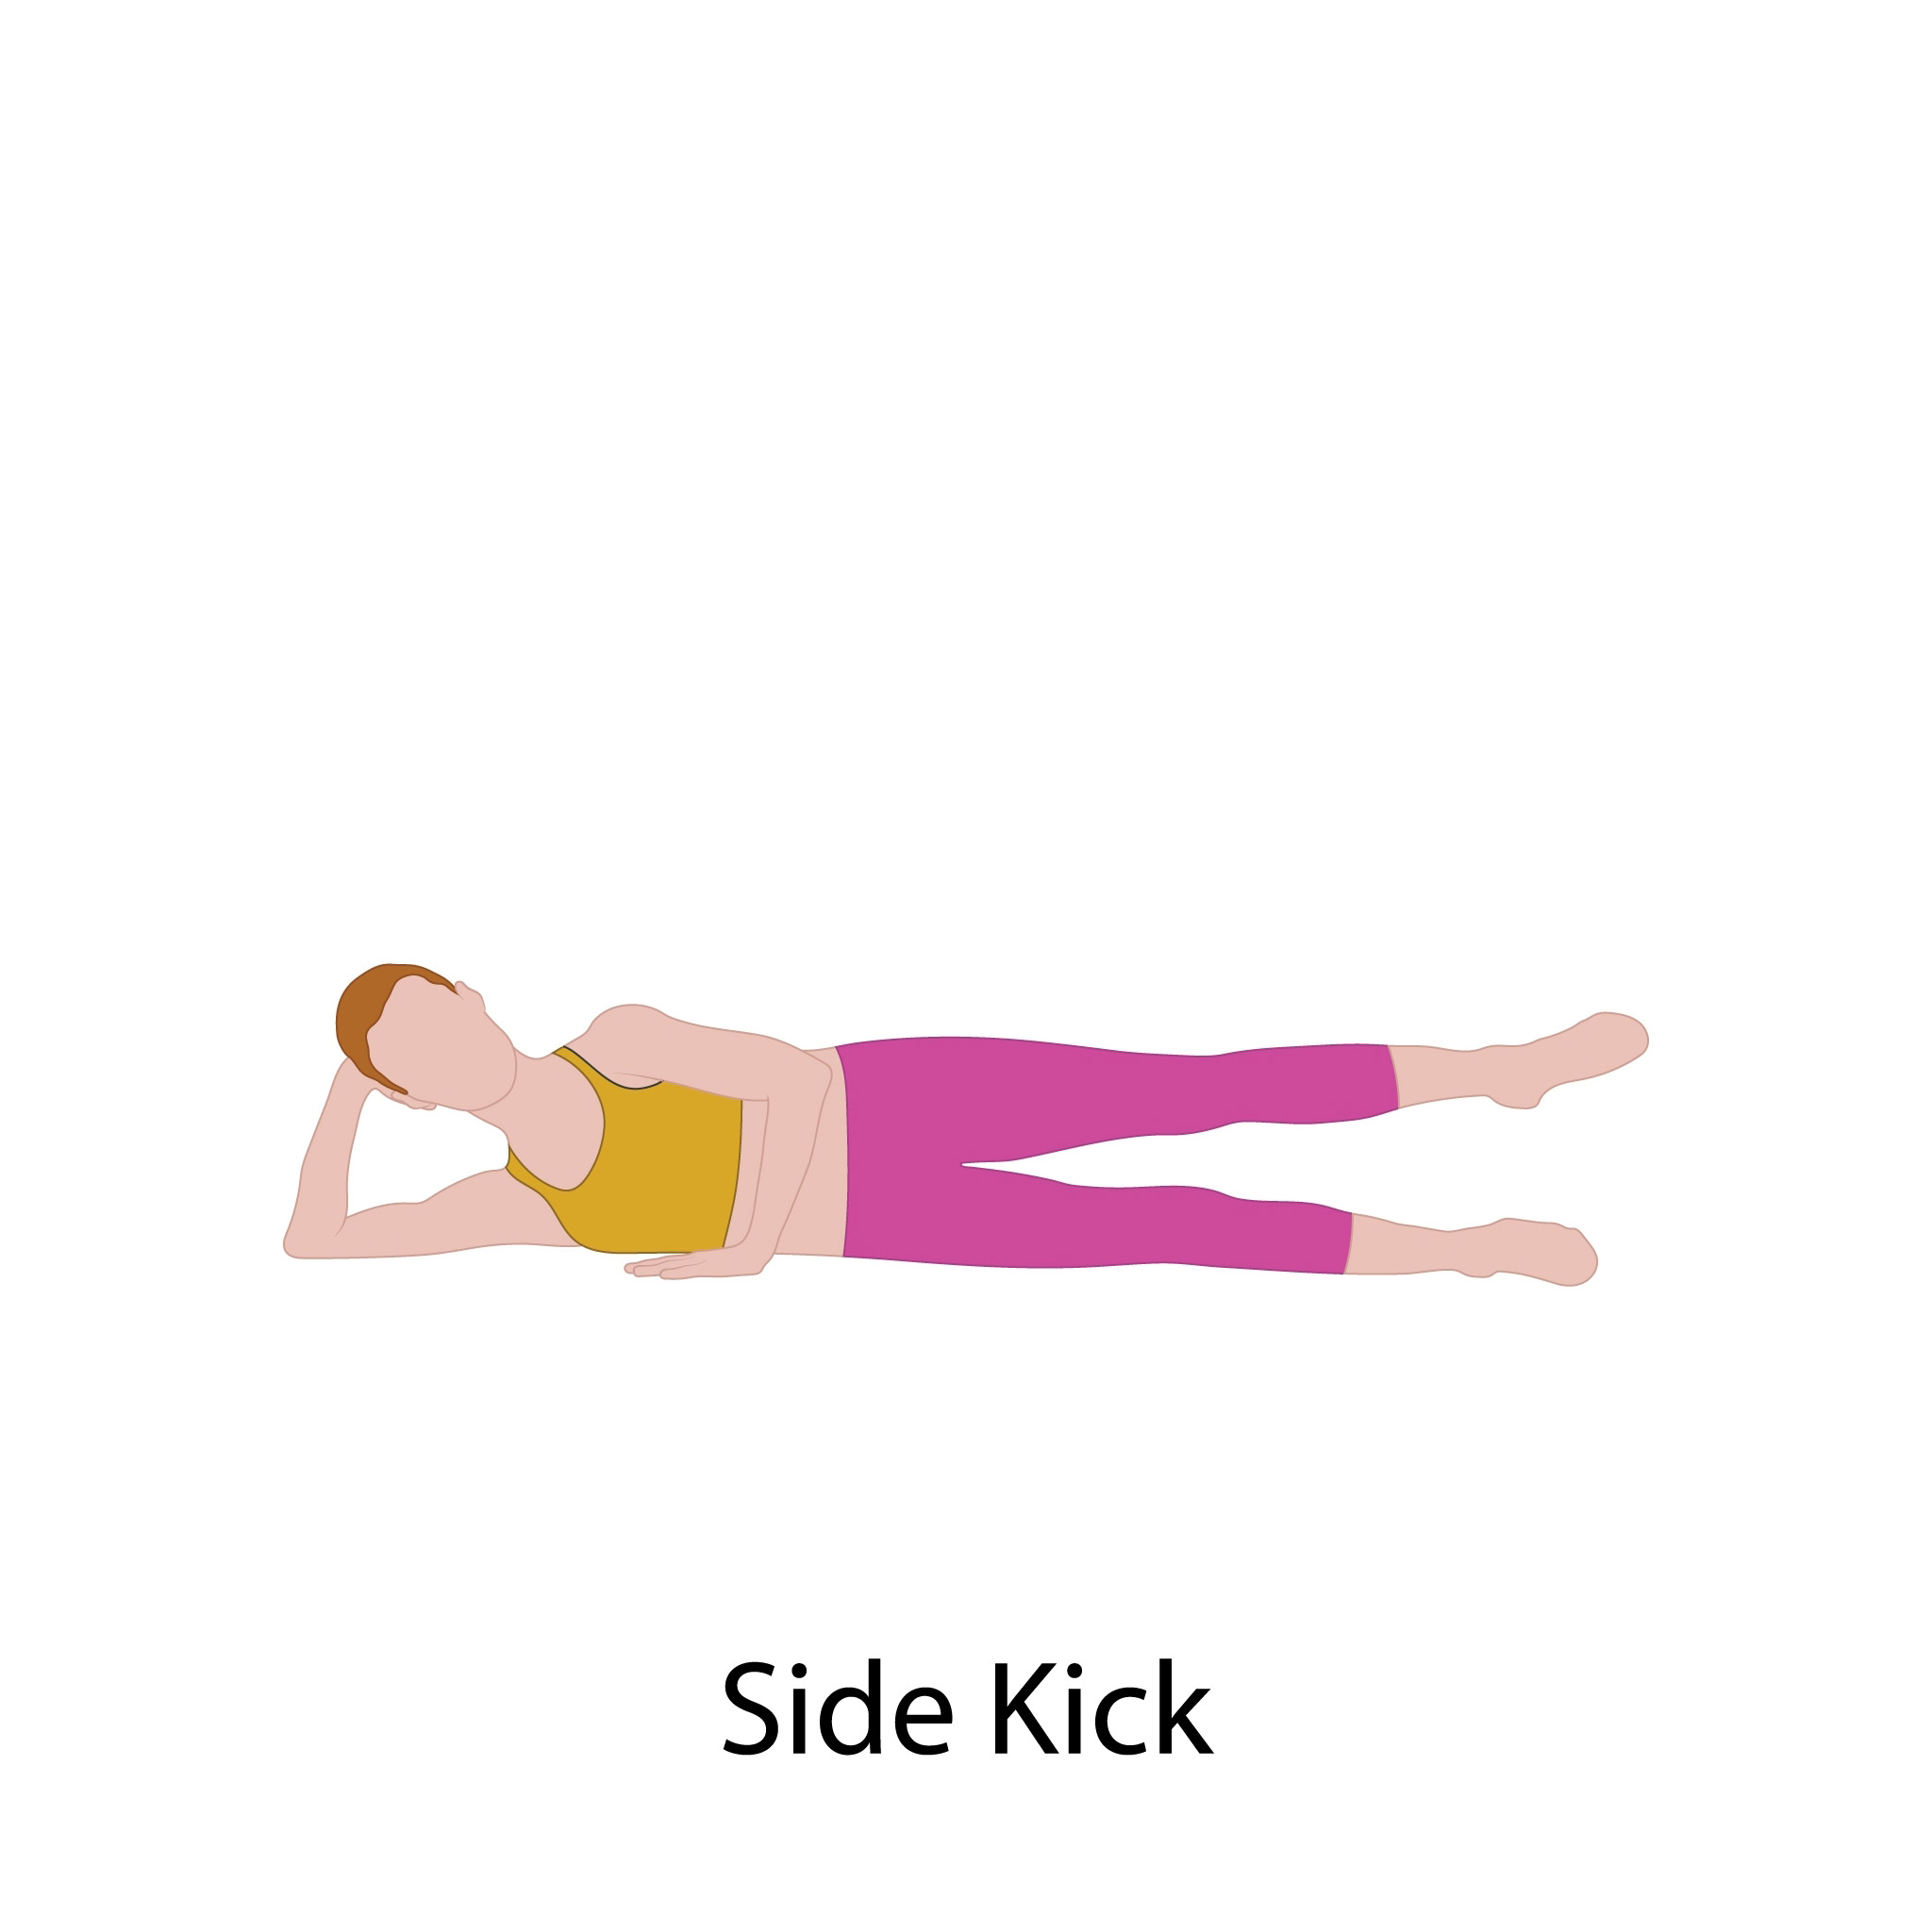 Side kick: interno ed esterno coscia